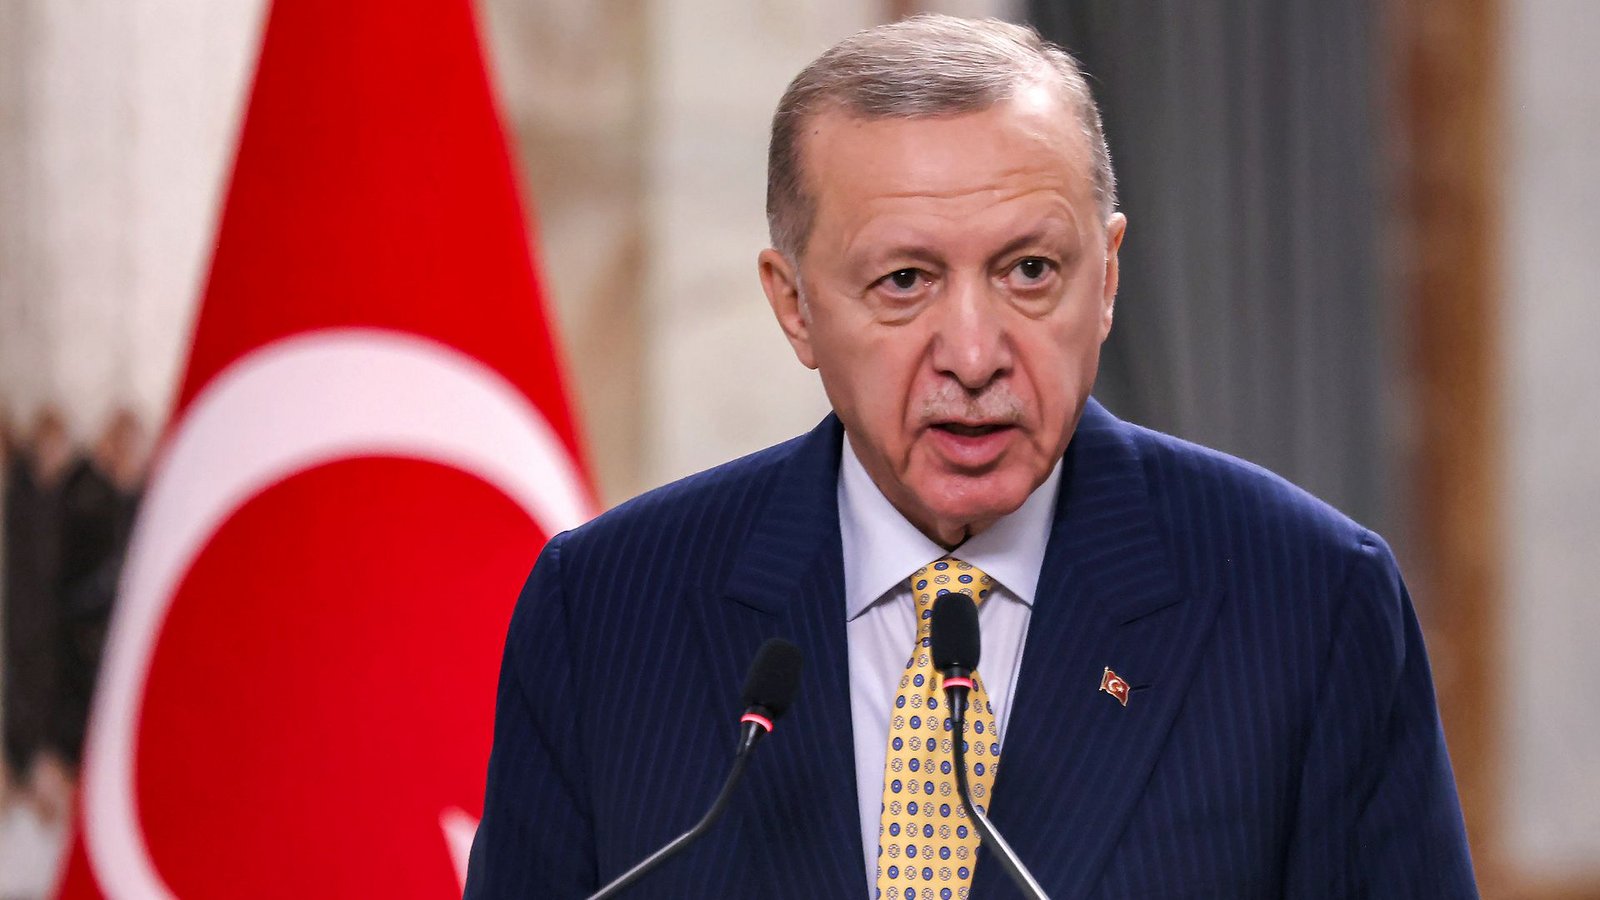 Der türkische Präsident Recep Tayyip Erdogan wirft dem Westen vor, seine eigenen Werte zu missachten, wenn es um den Gaza-Krieg geht.Foto: AHMAD AL-RUBAYE/AFP Pool via AP/dpa